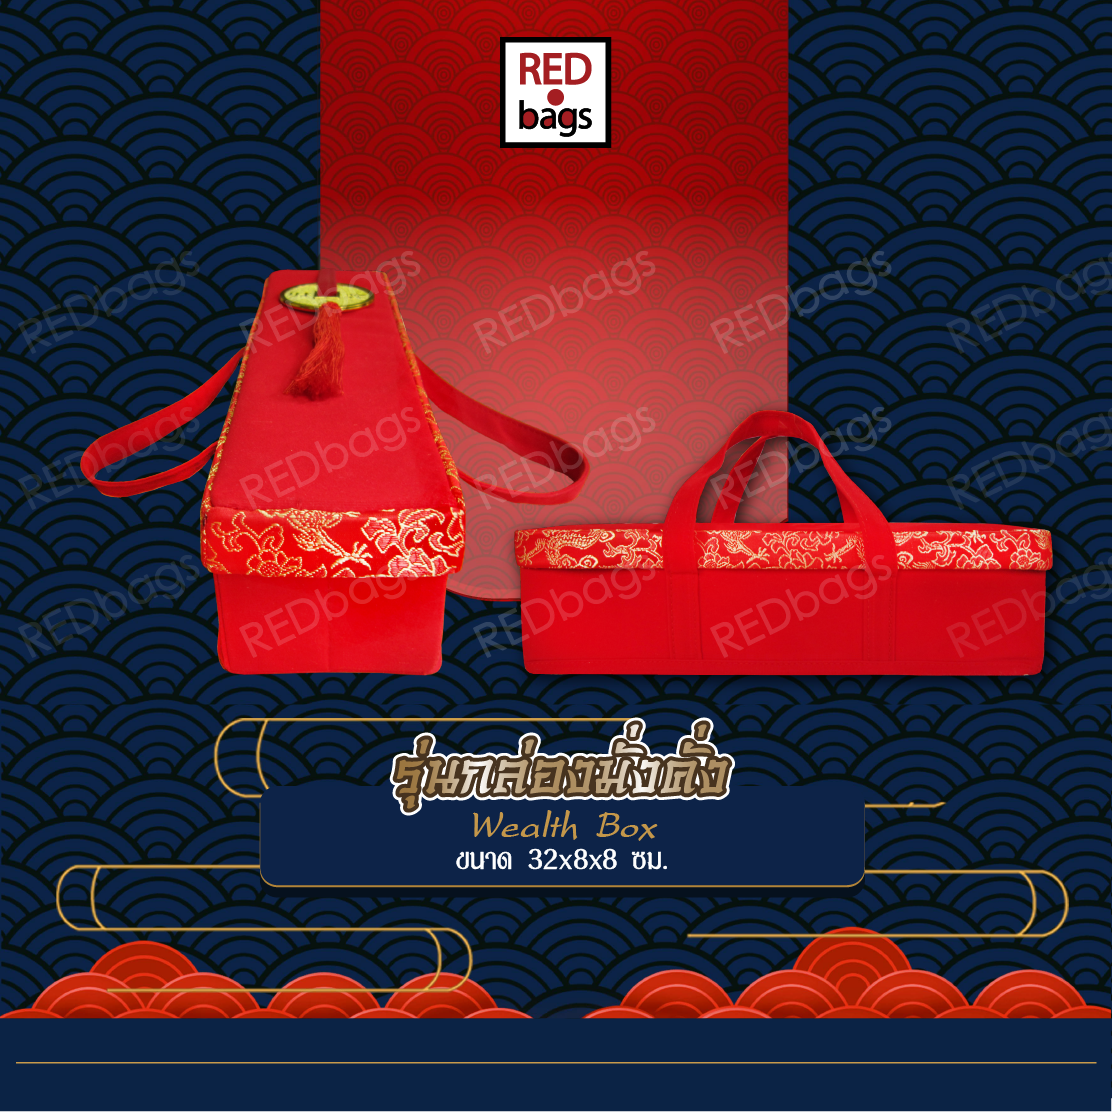 กล่องใส่ส้มตรุษจีน กล่องใส่ของขวัญ ของชำร่วย REDbags รุ่นกล่องมั่งคั่ง Wealth Box ชุด 5 ใบ